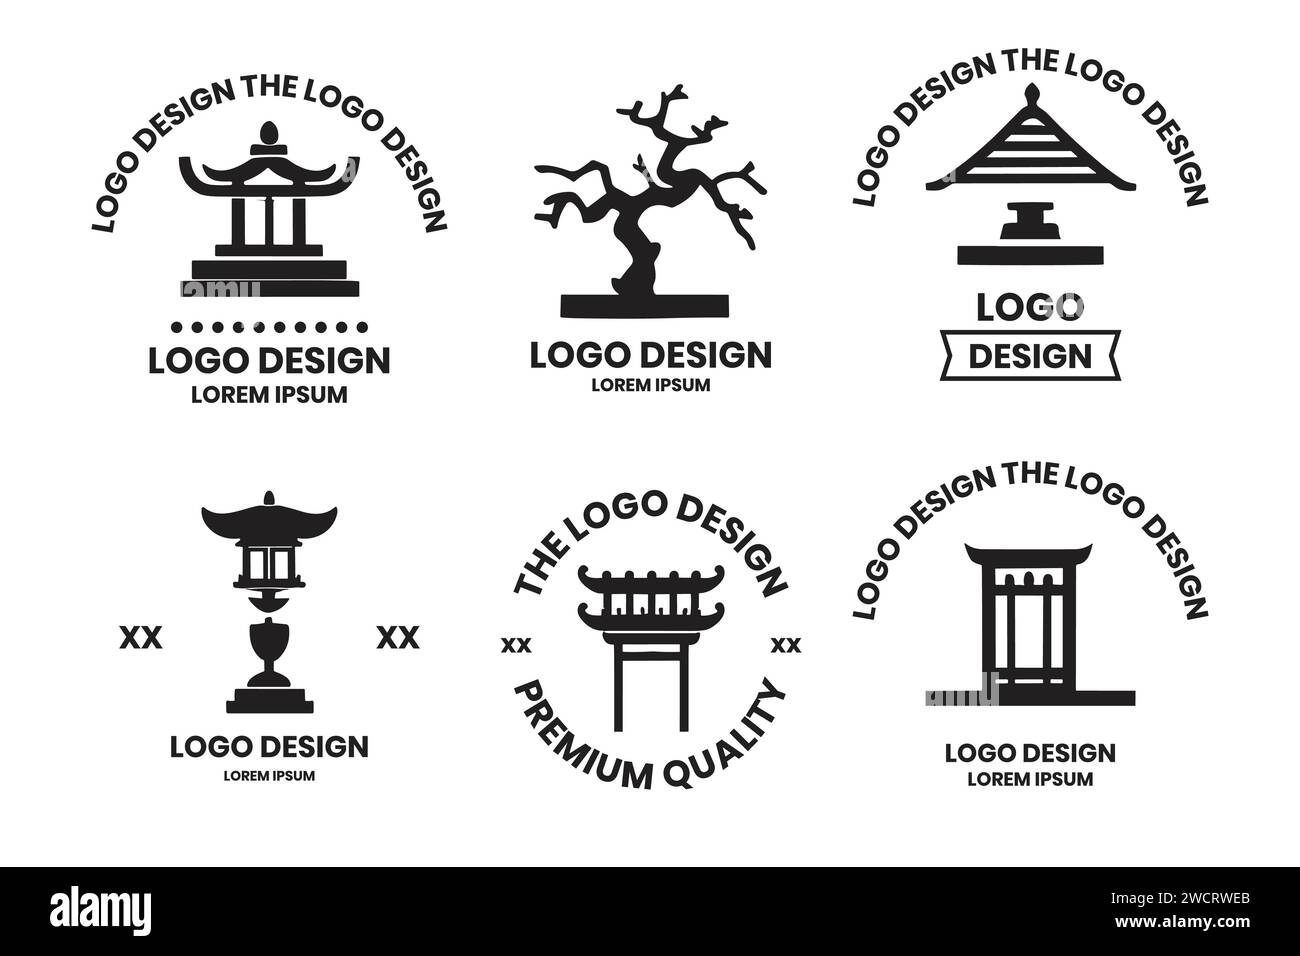 Logo de porte japonais ou lanterne chinoise dans le style vintage isolé sur fond Illustration de Vecteur